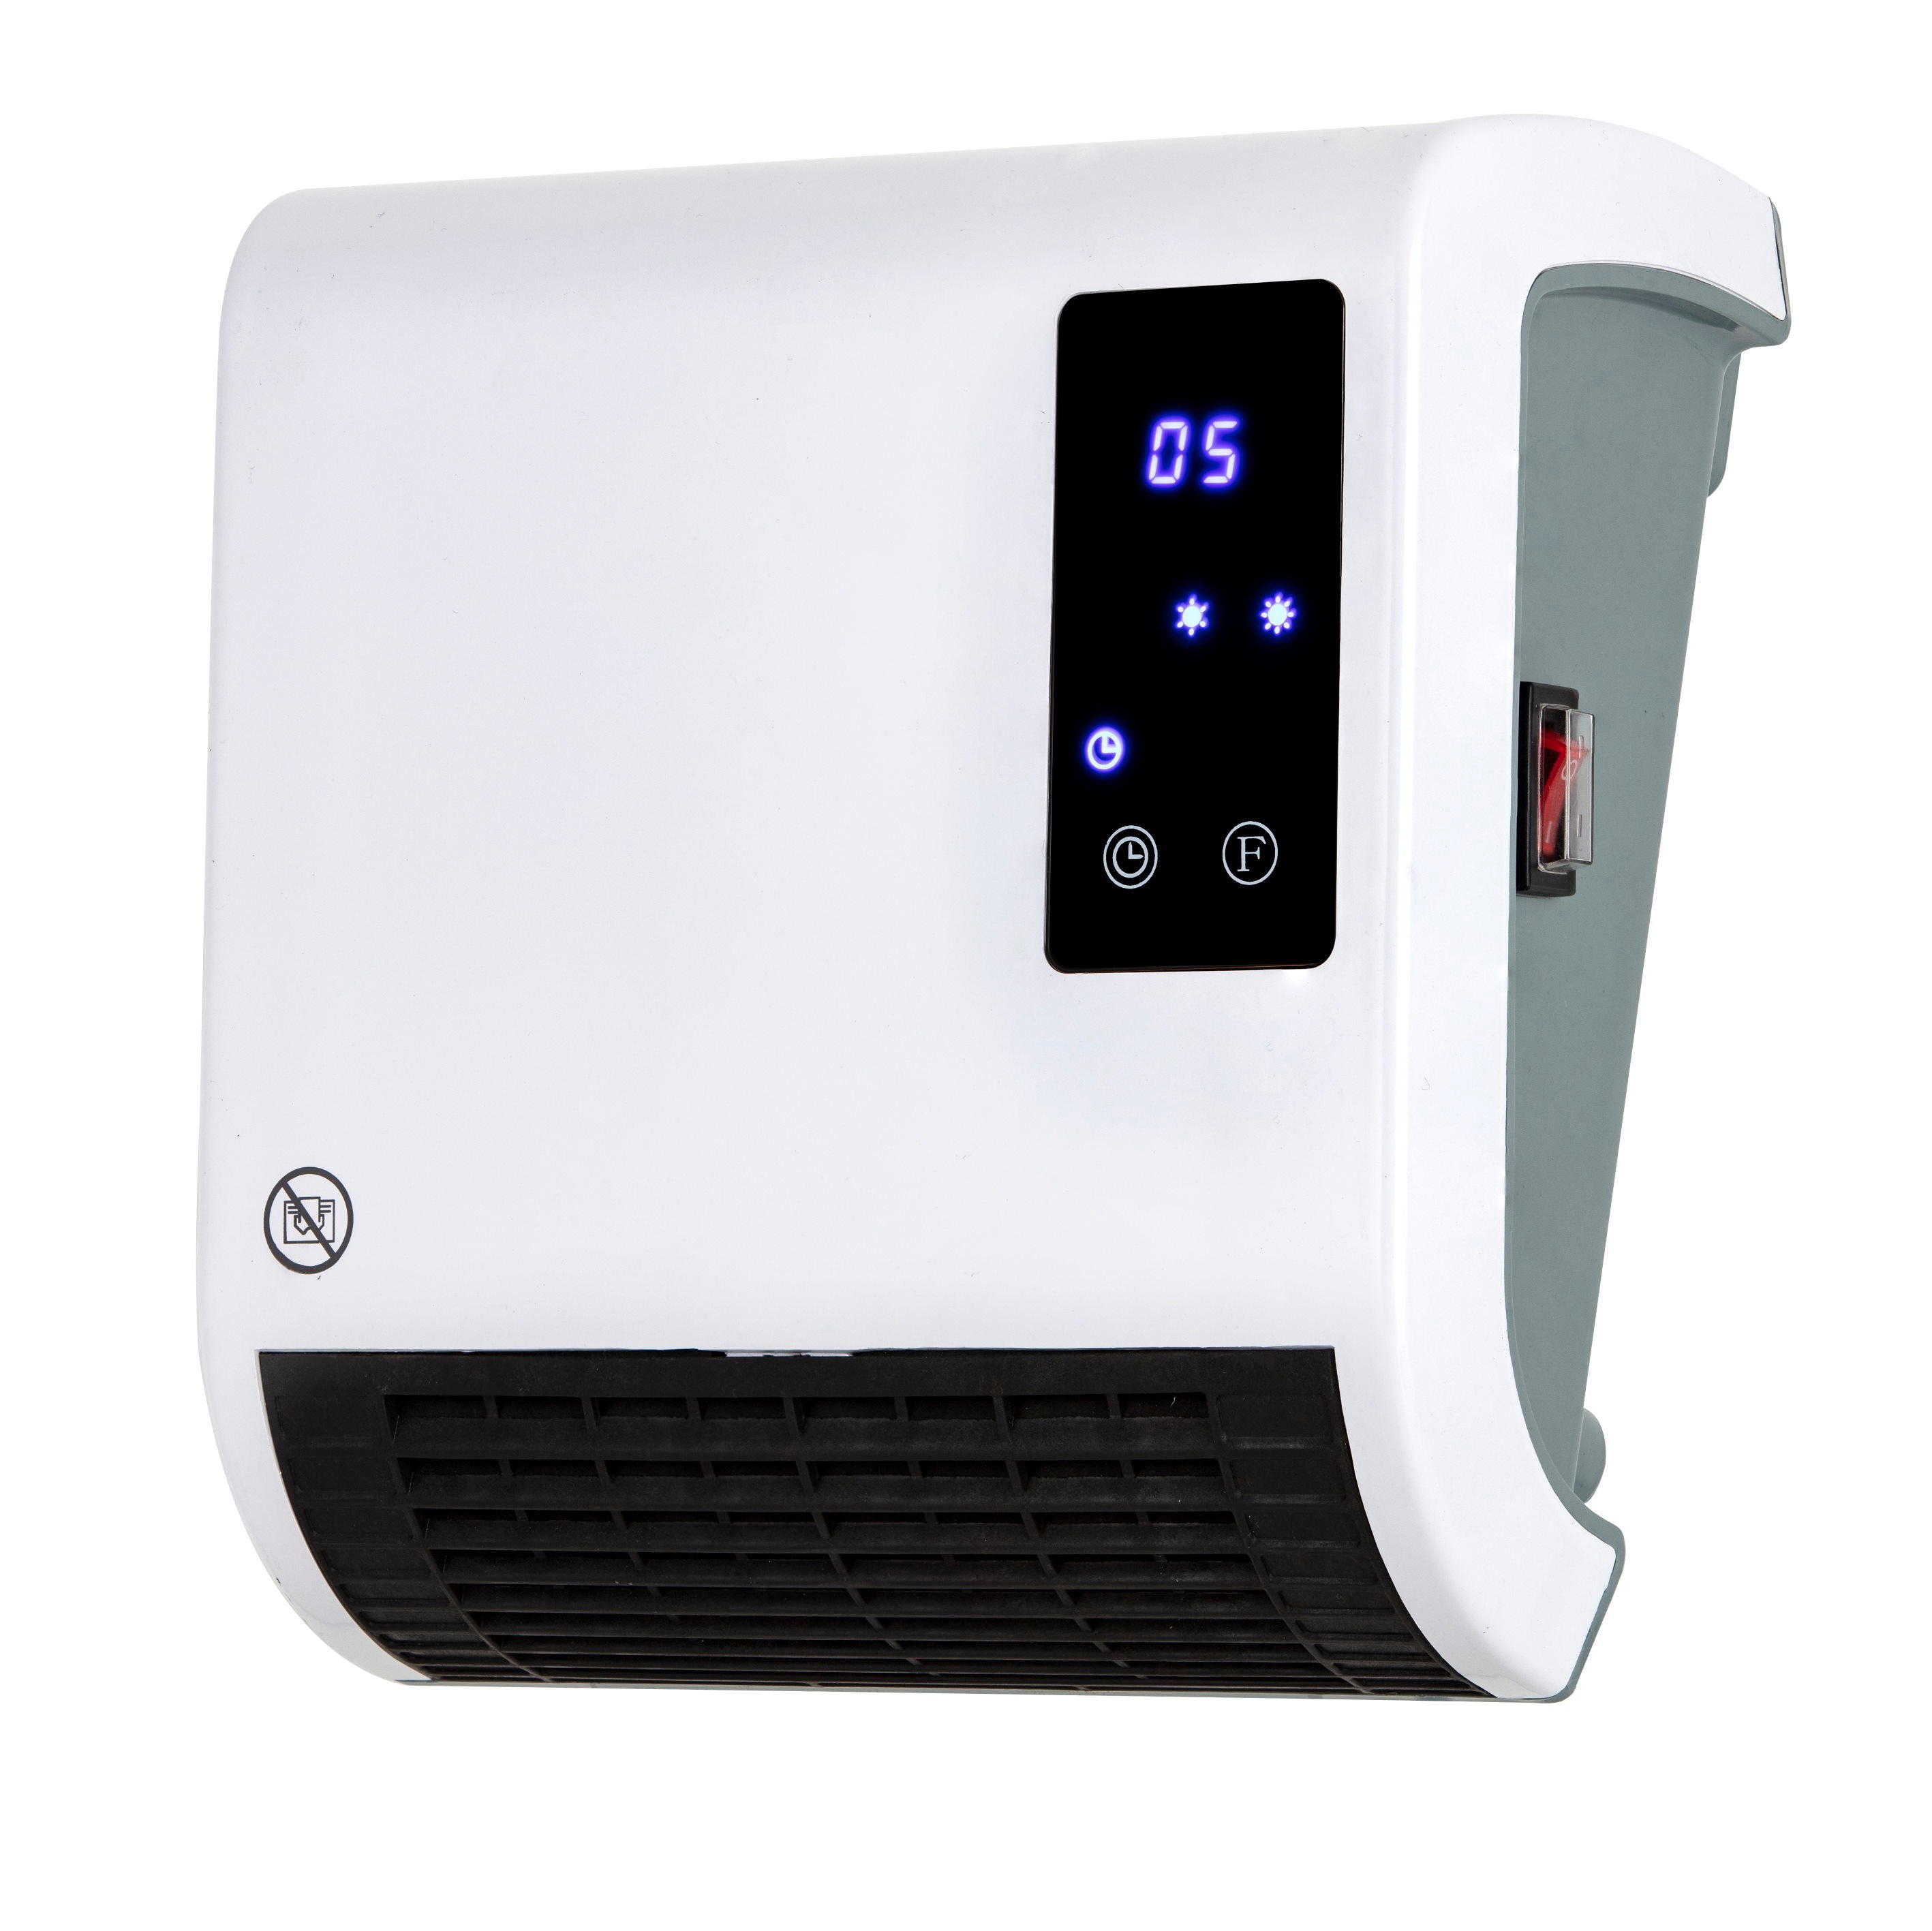 Warmlite WL44015 Digital Downflow Fan Heater 2kW White - Premium Fan Heaters from warmlite - Just $44.99! Shop now at W Hurst & Son (IW) Ltd